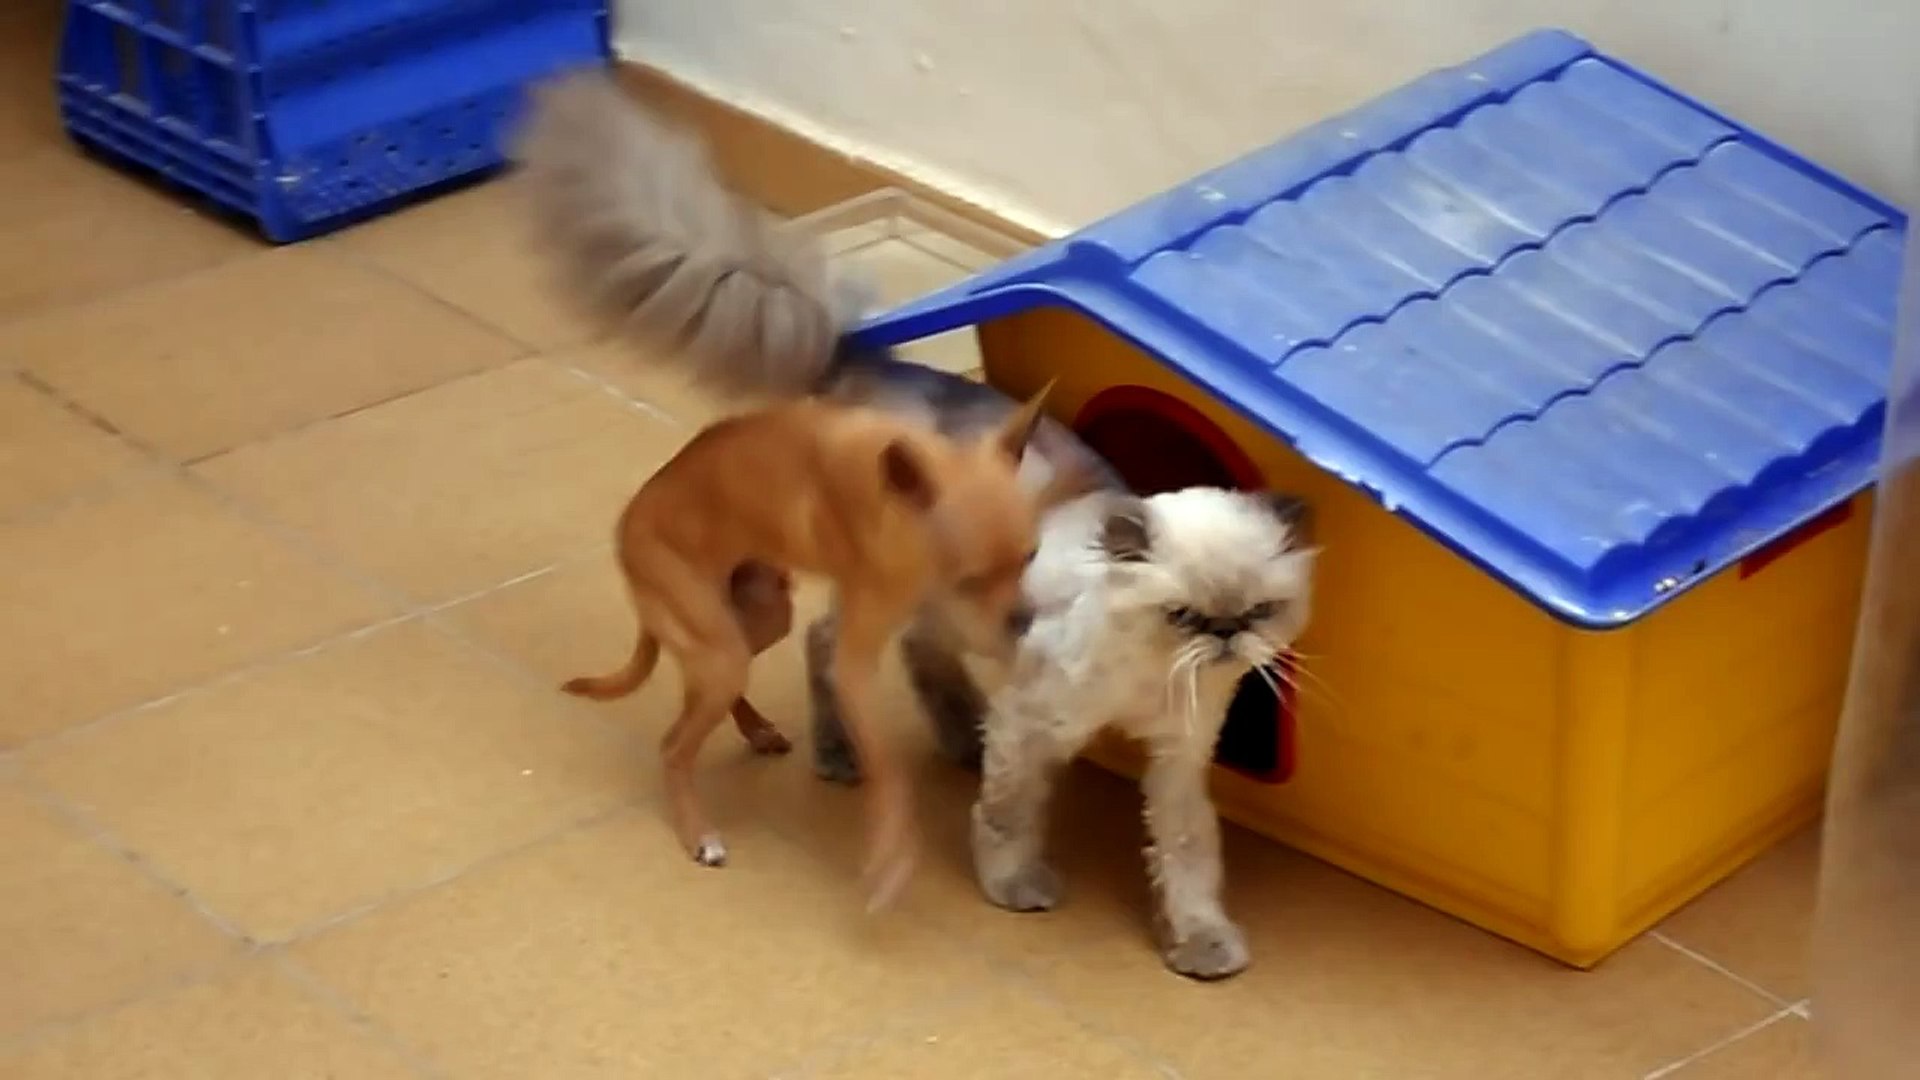 Perro chihuahua violando gata.MP4 - video Dailymotion